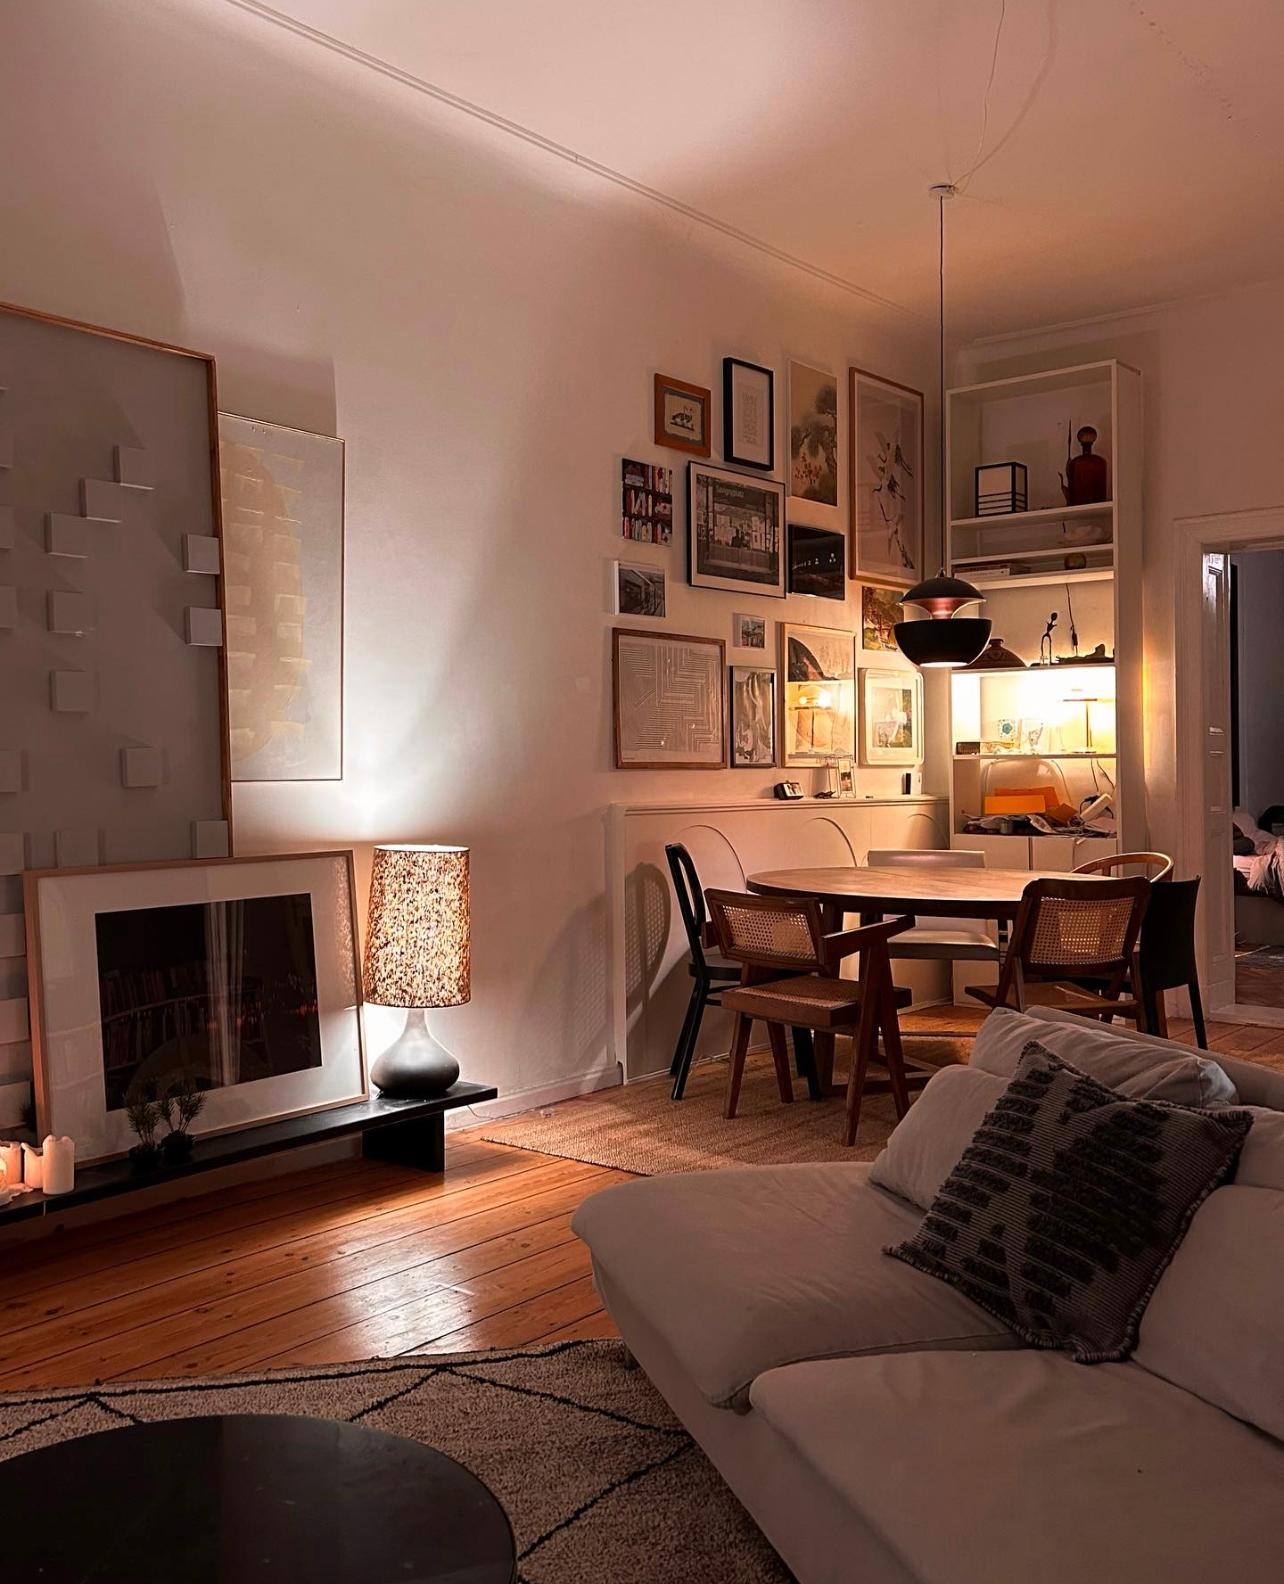 C'est le week-end! 🫶🏽♥️ #wohnzimmer #kunst #bilderwand #altbau #holzboden #esszimmer #couch